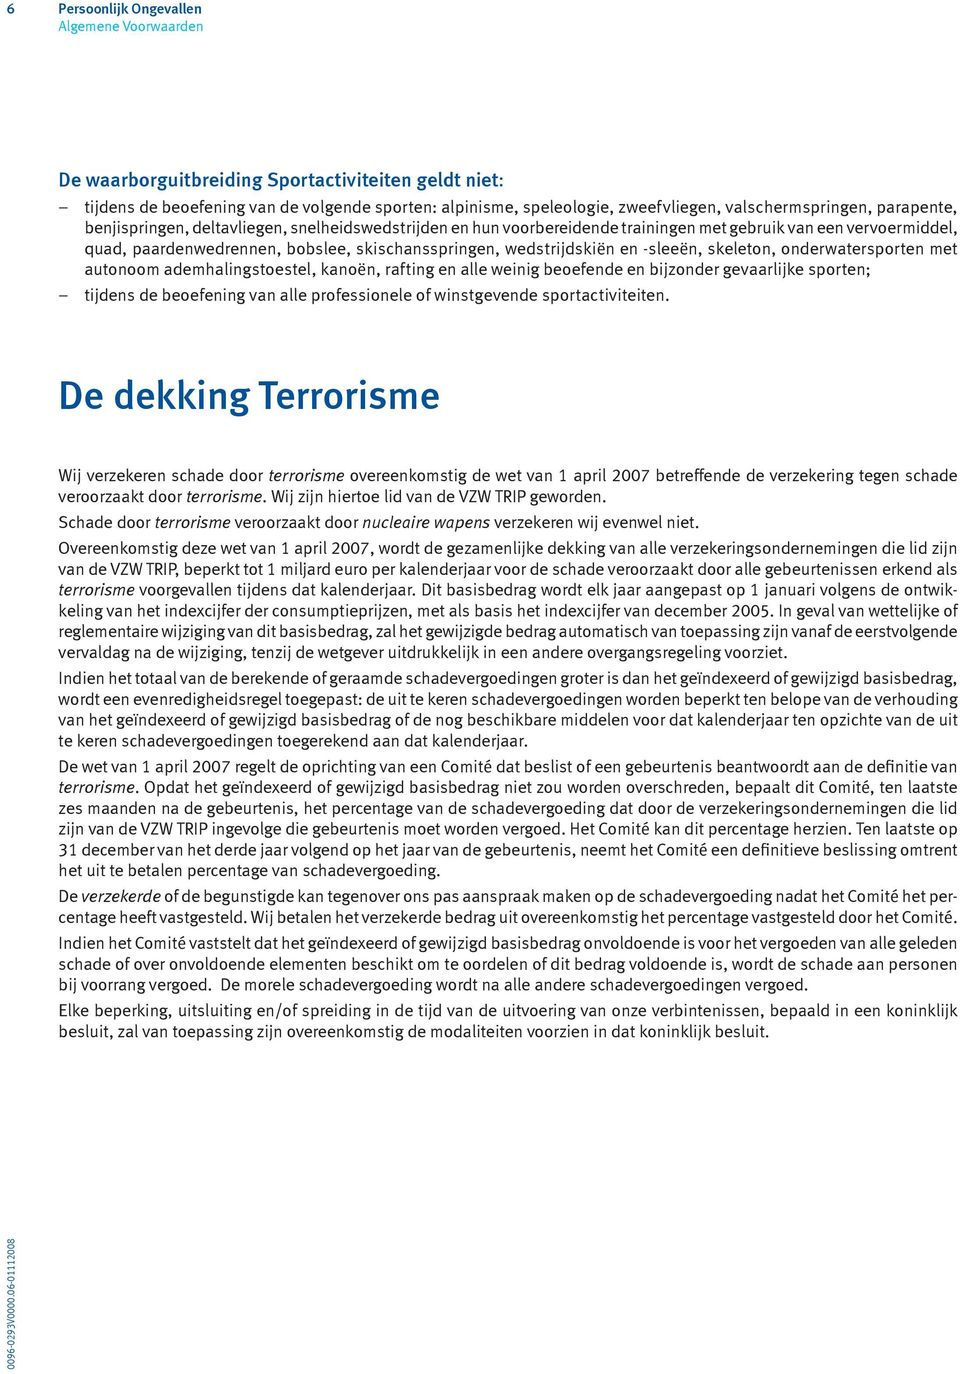 De dekking Terrorisme Wij verzekeren schade door terrorisme overeenkomstig de wet van 1 april 2007 betreffende de verzekering tegen schade veroorzaakt door terrorisme.